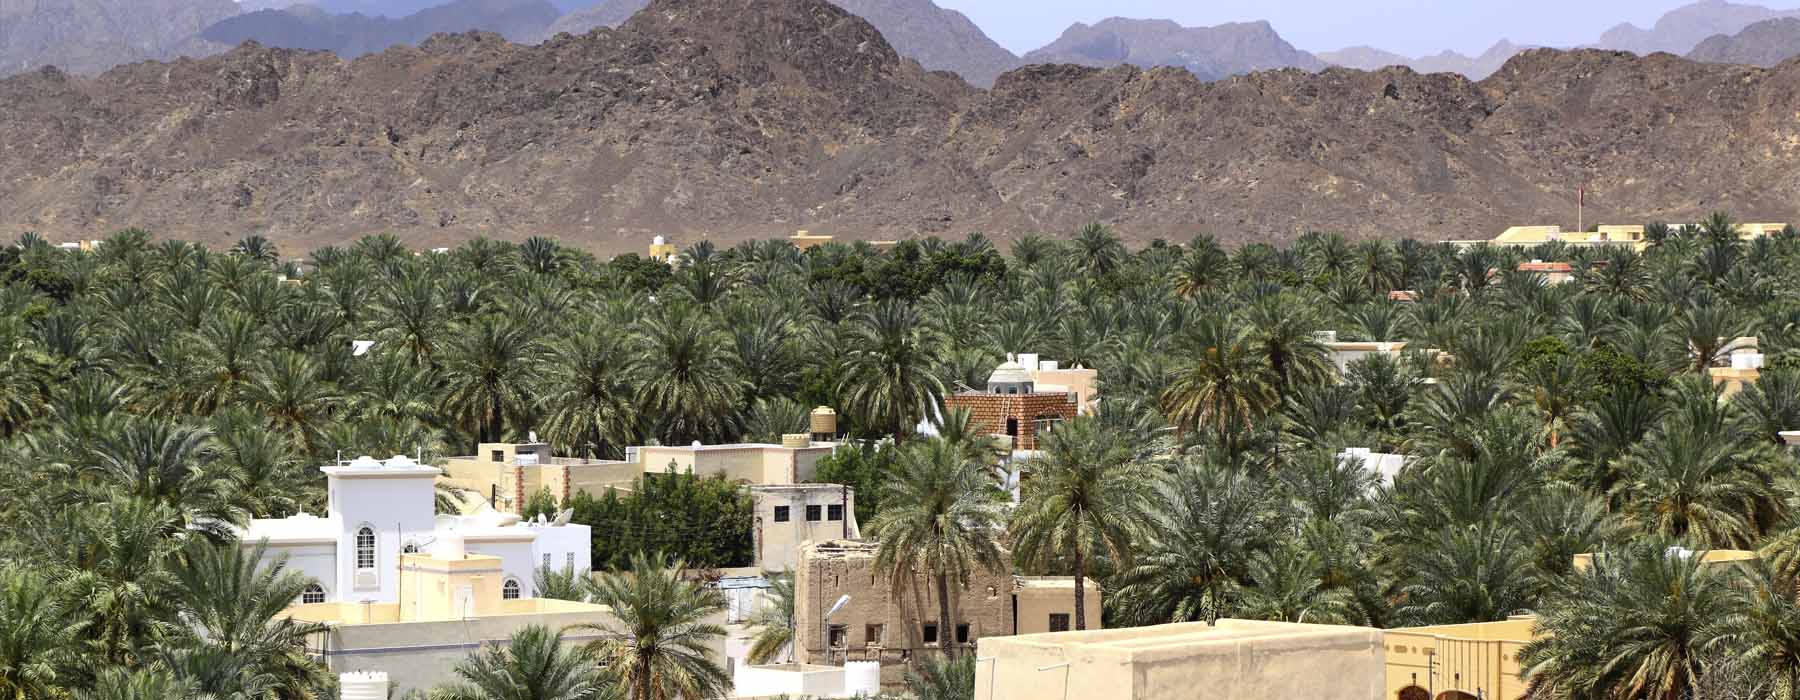 All our Oman<br class="hidden-md hidden-lg" /> Easter Holidays